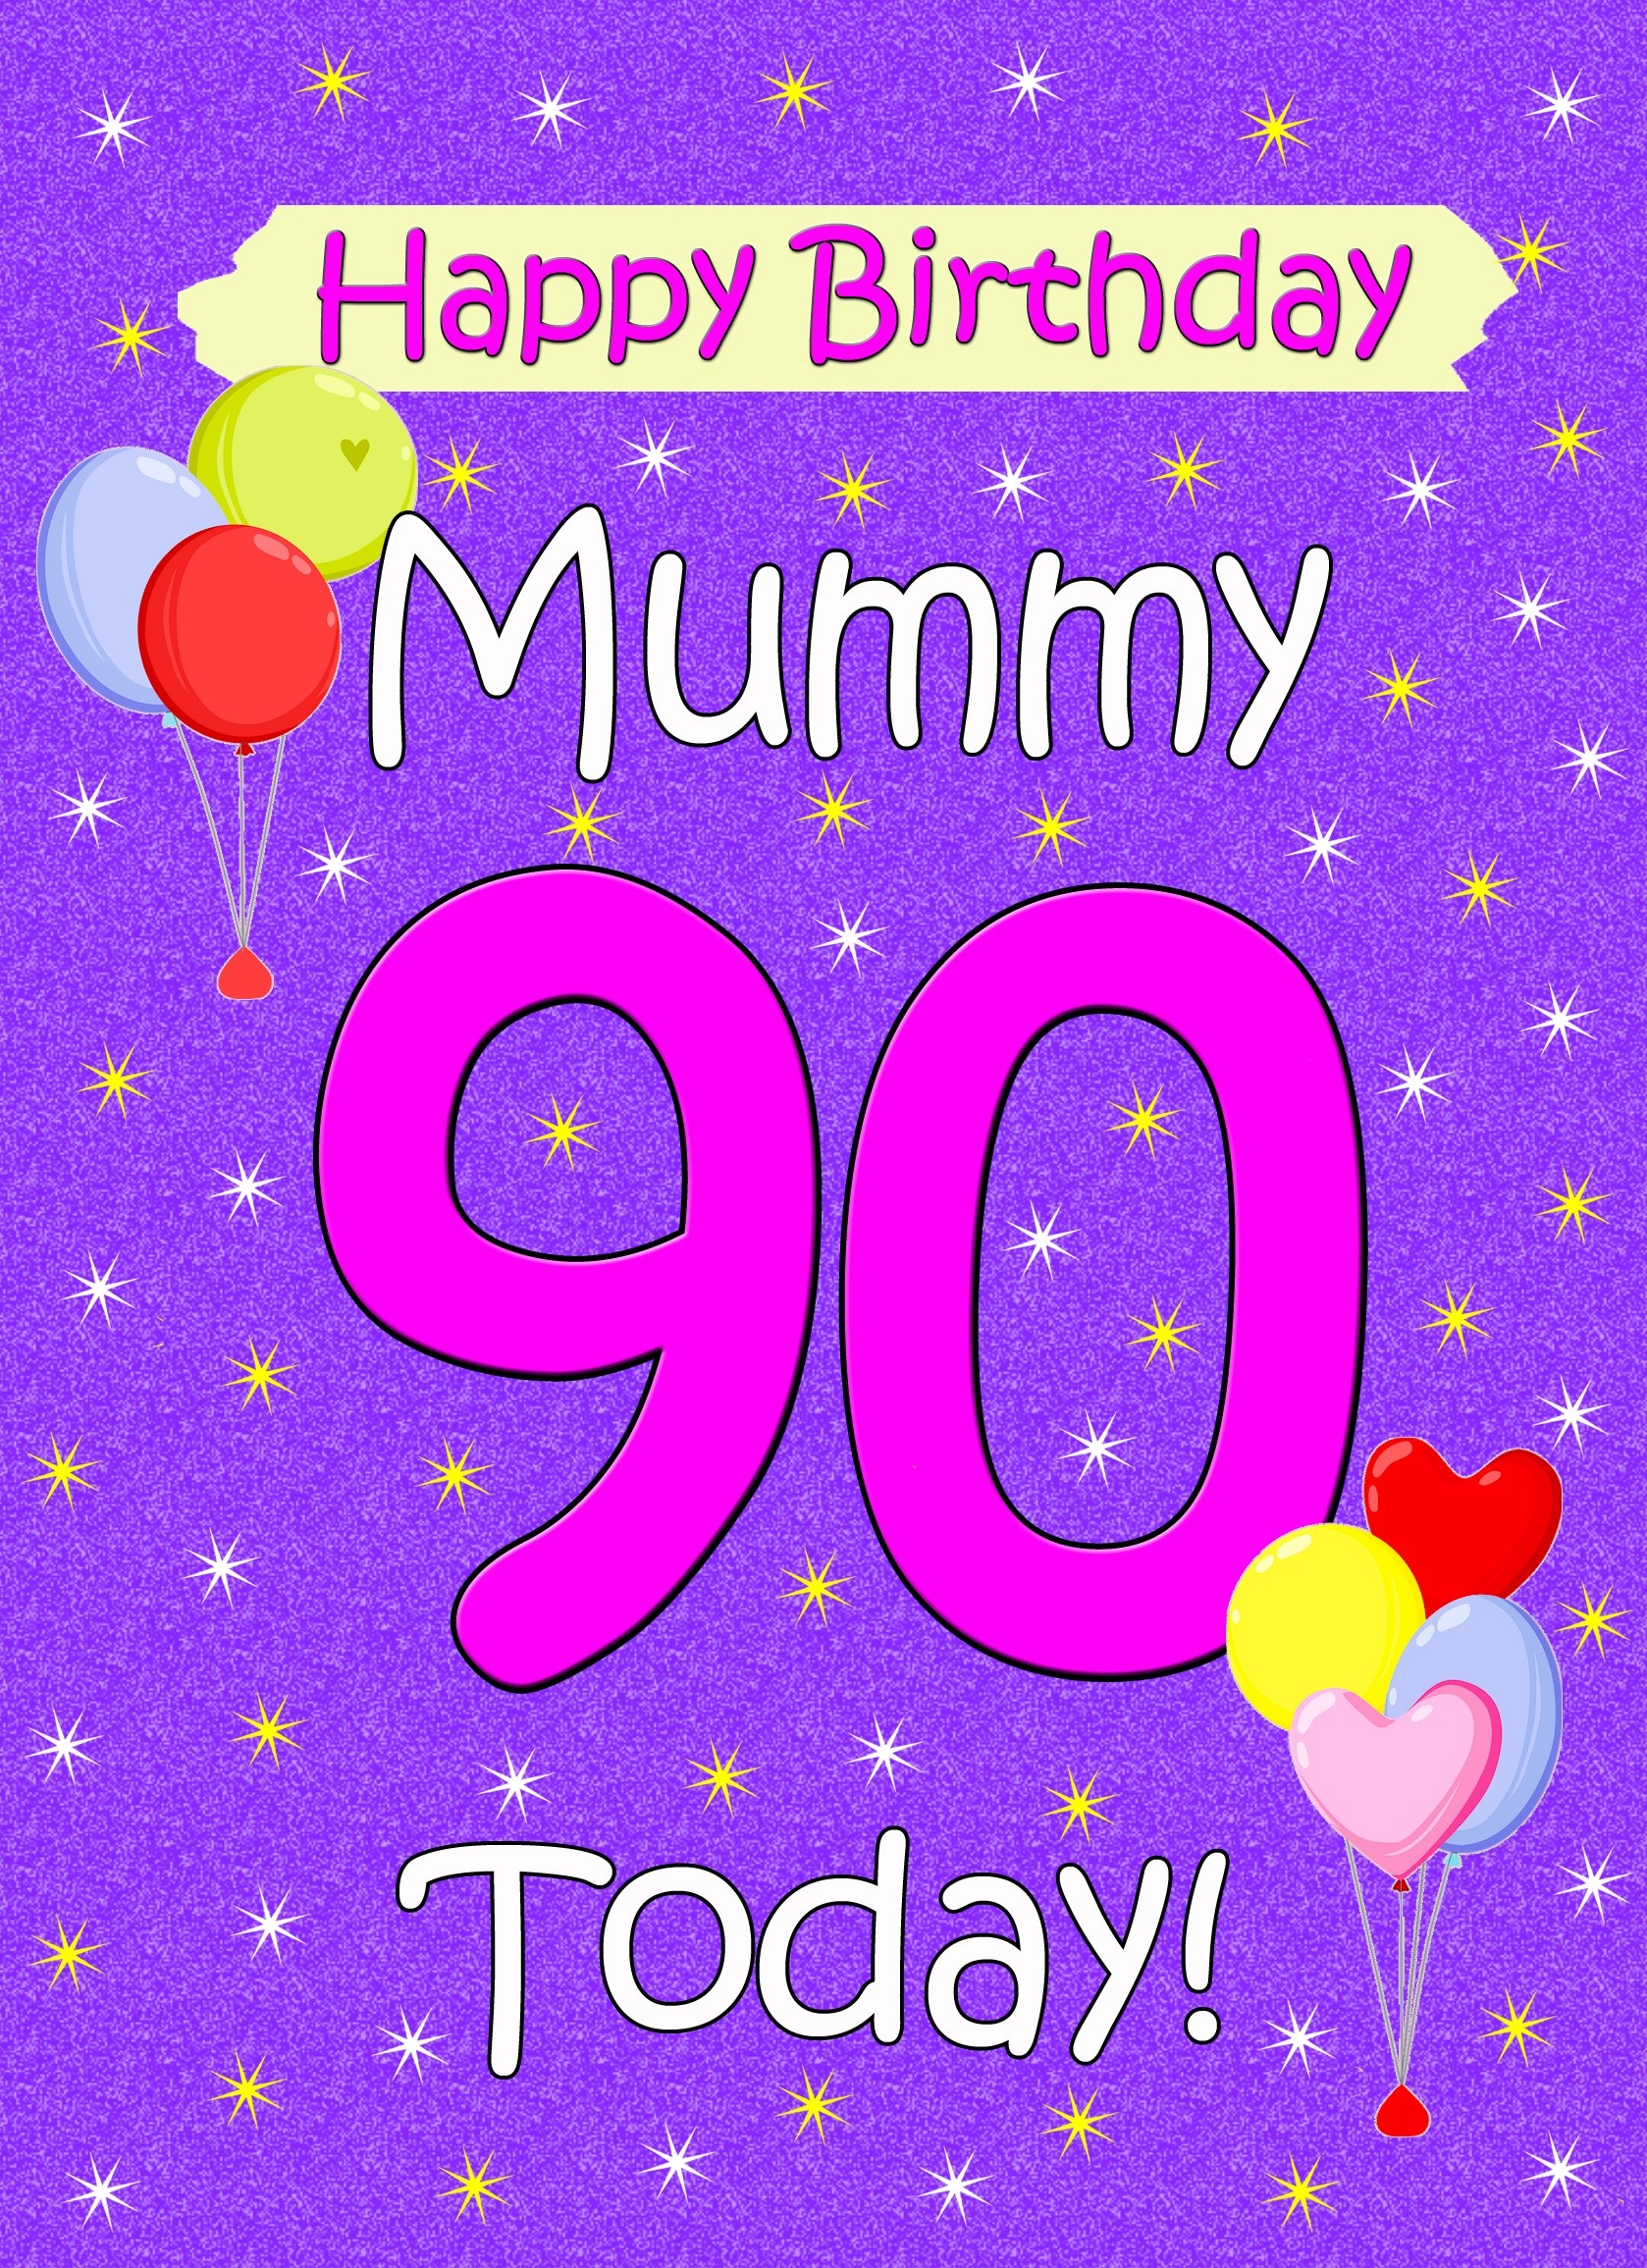 Mummy 90th Birthday Card (Lilac)